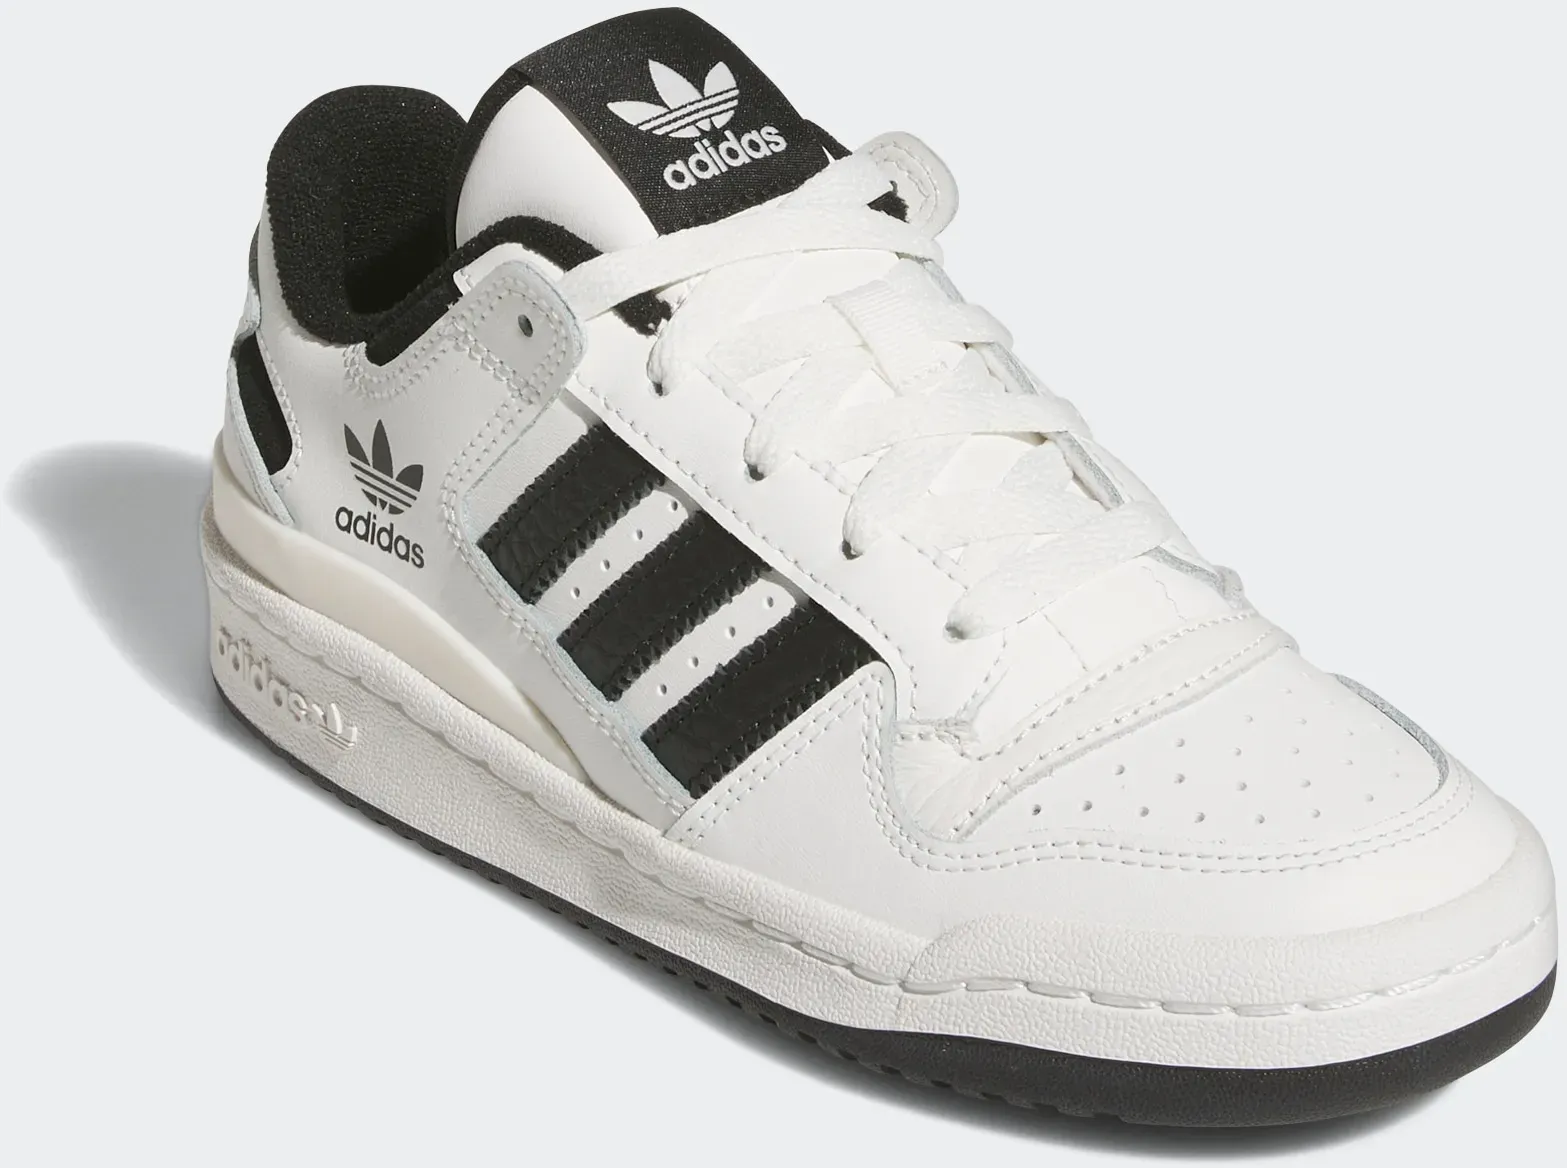 Sneaker ADIDAS ORIGINALS "FORUM LOW CL KIDS" Gr. 35,5, schwarz-weiß (core white, core black, white) Kinder Schuhe Basketballschuhe